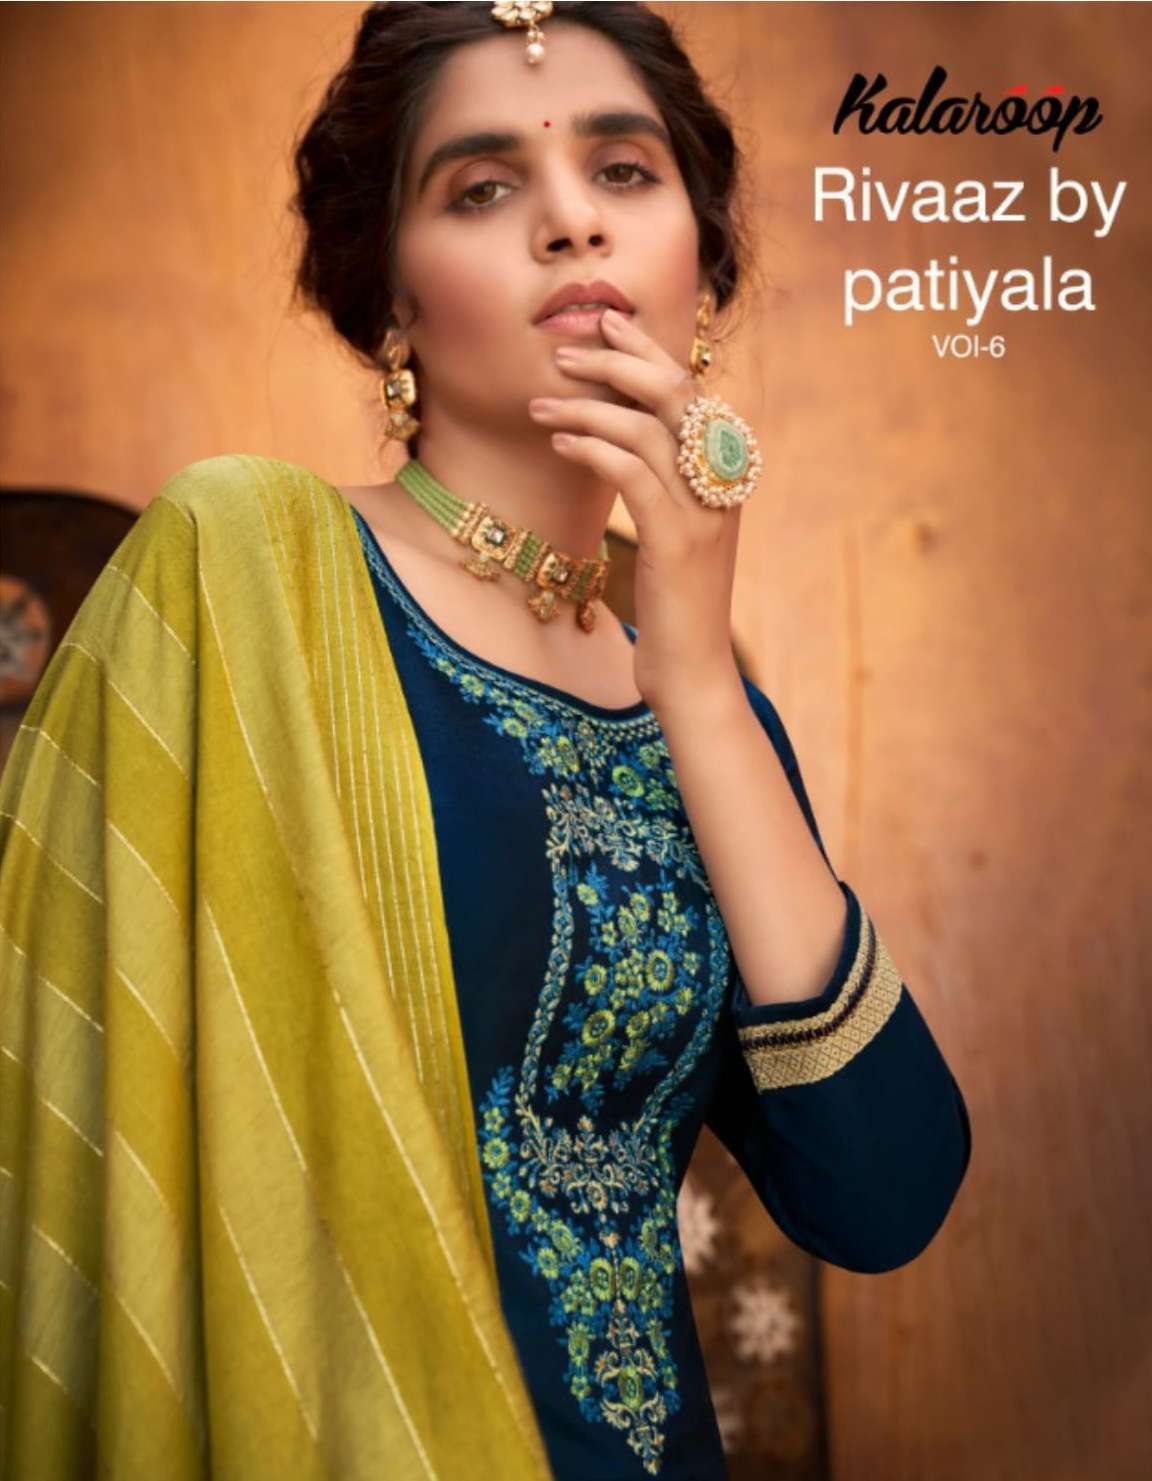 Kalaroop presents Rivaaz by patiyala vol-6 silk kurtis with patiyala and dupatta collection 